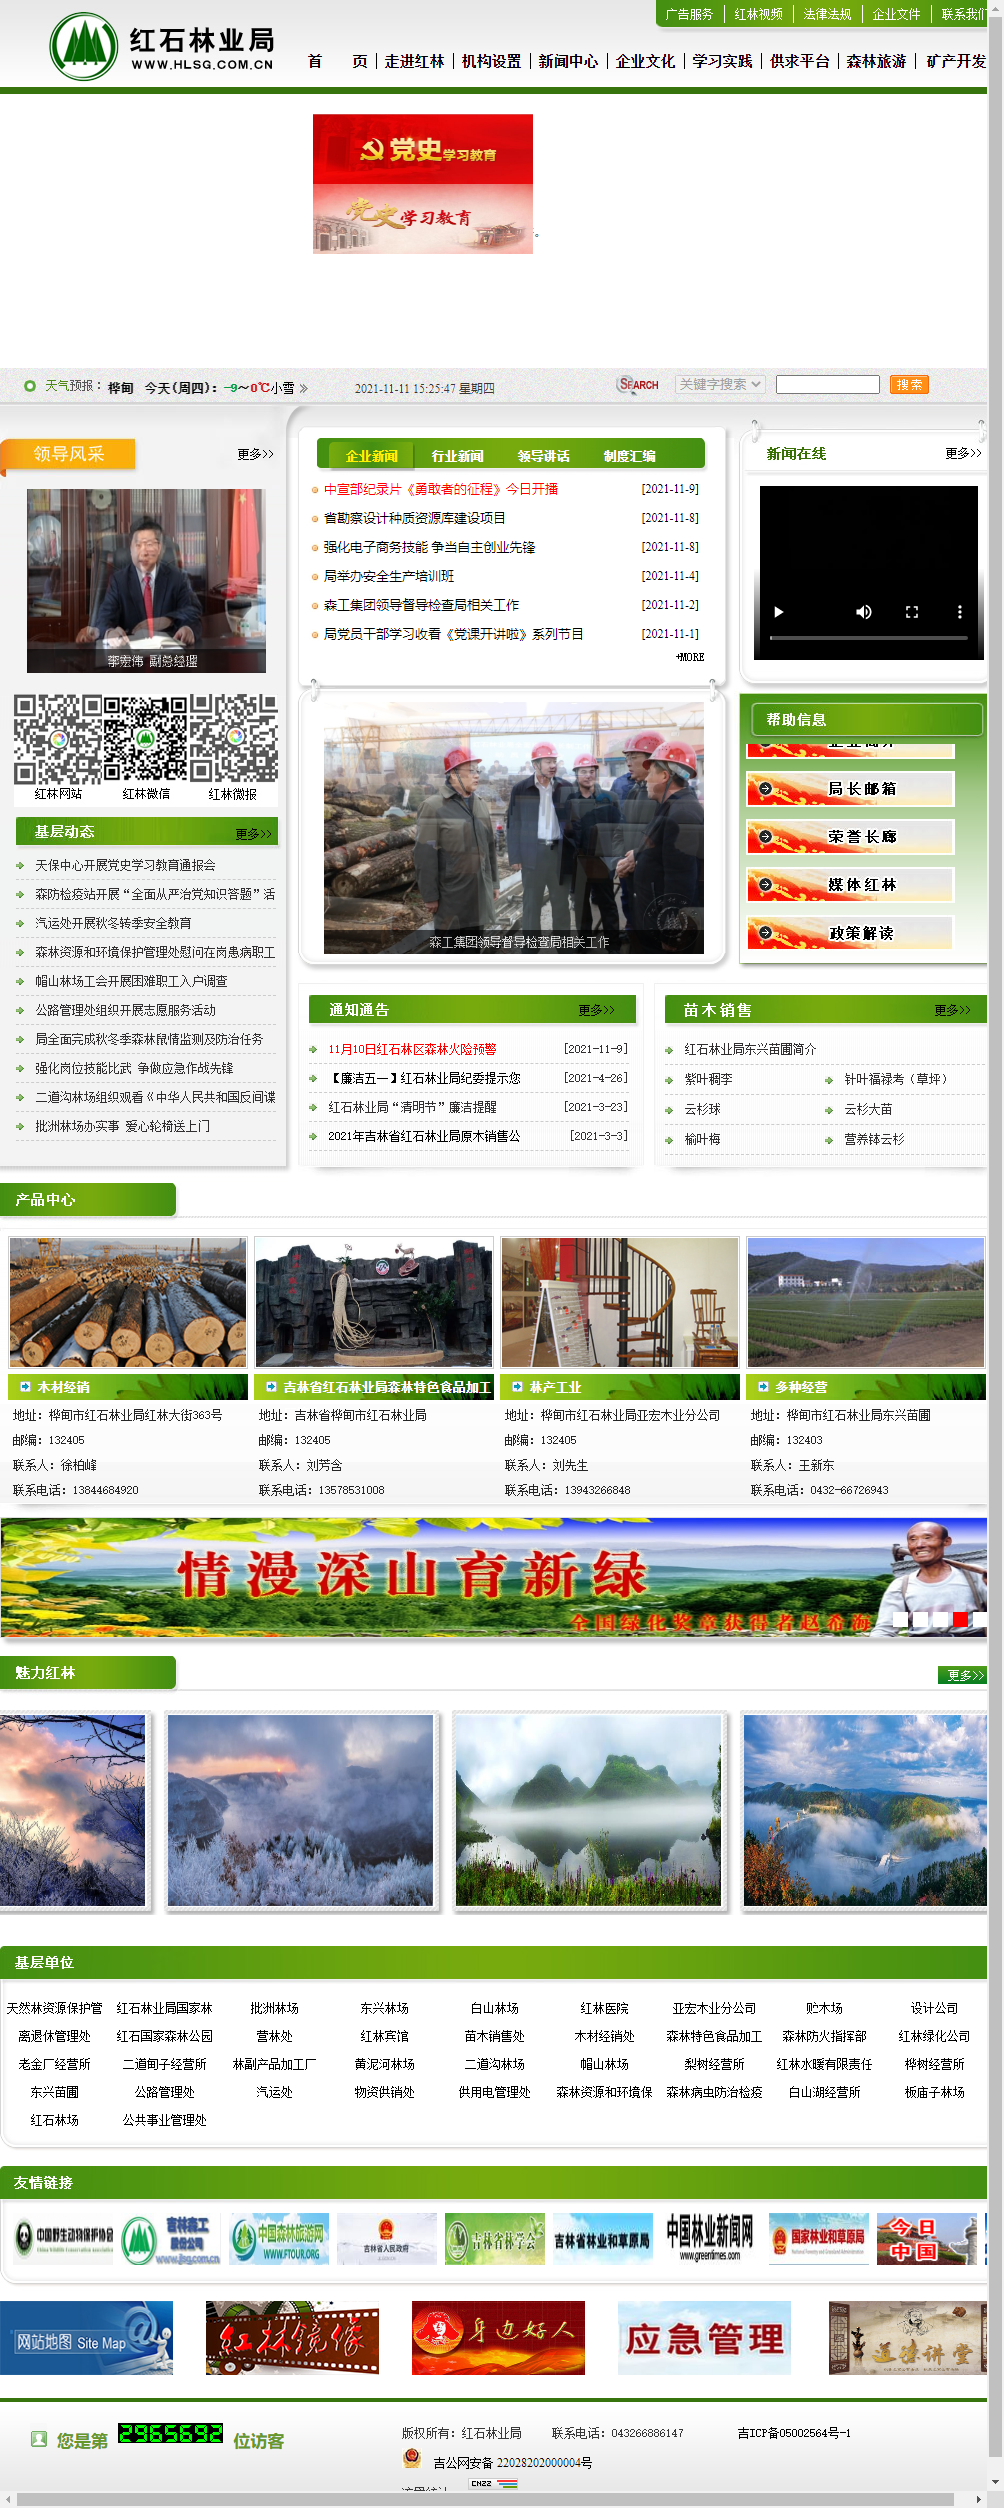 吉林省红石林业局网站案例